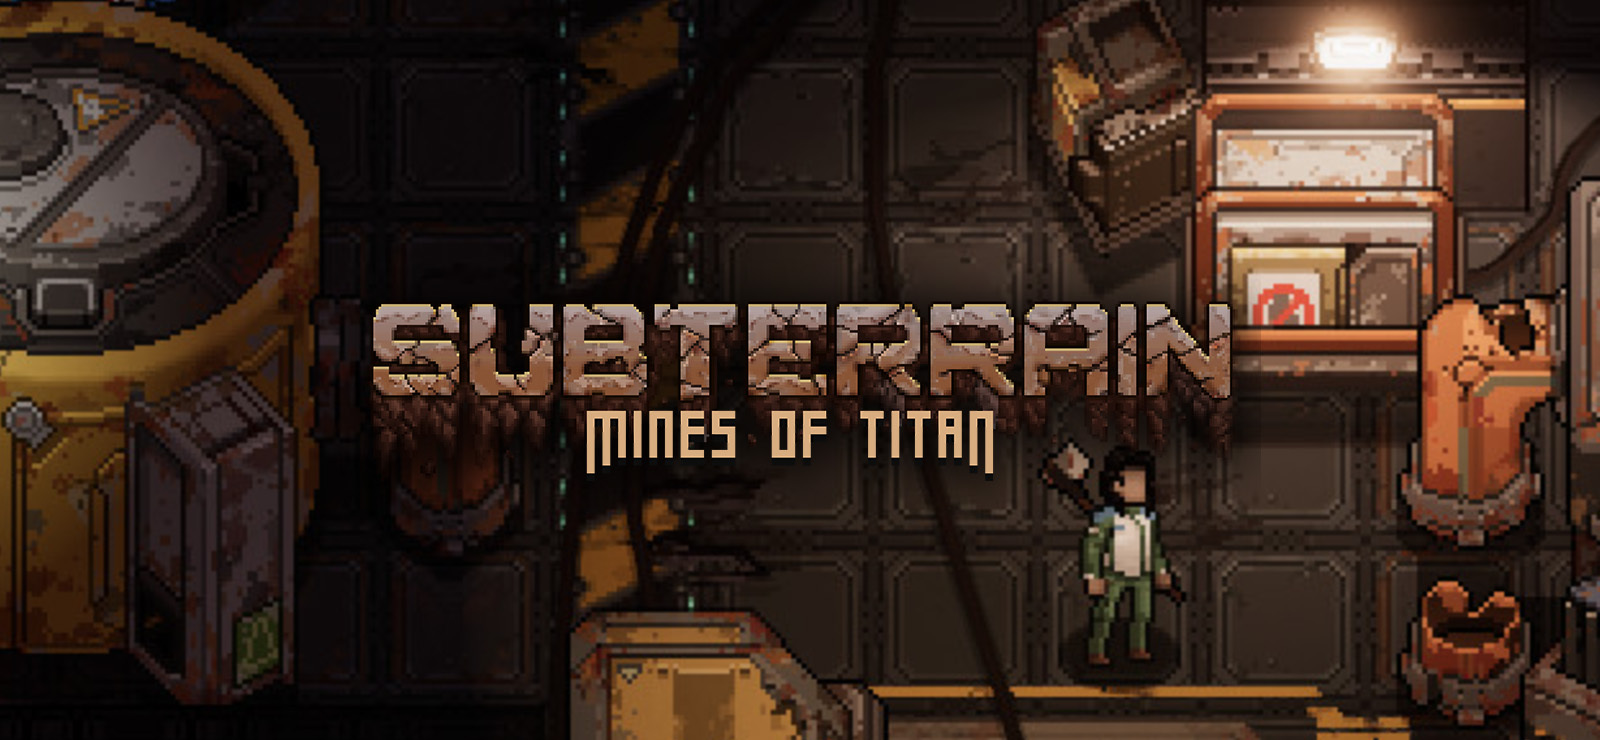 Subterrain: Mines of Titan on GOG.com